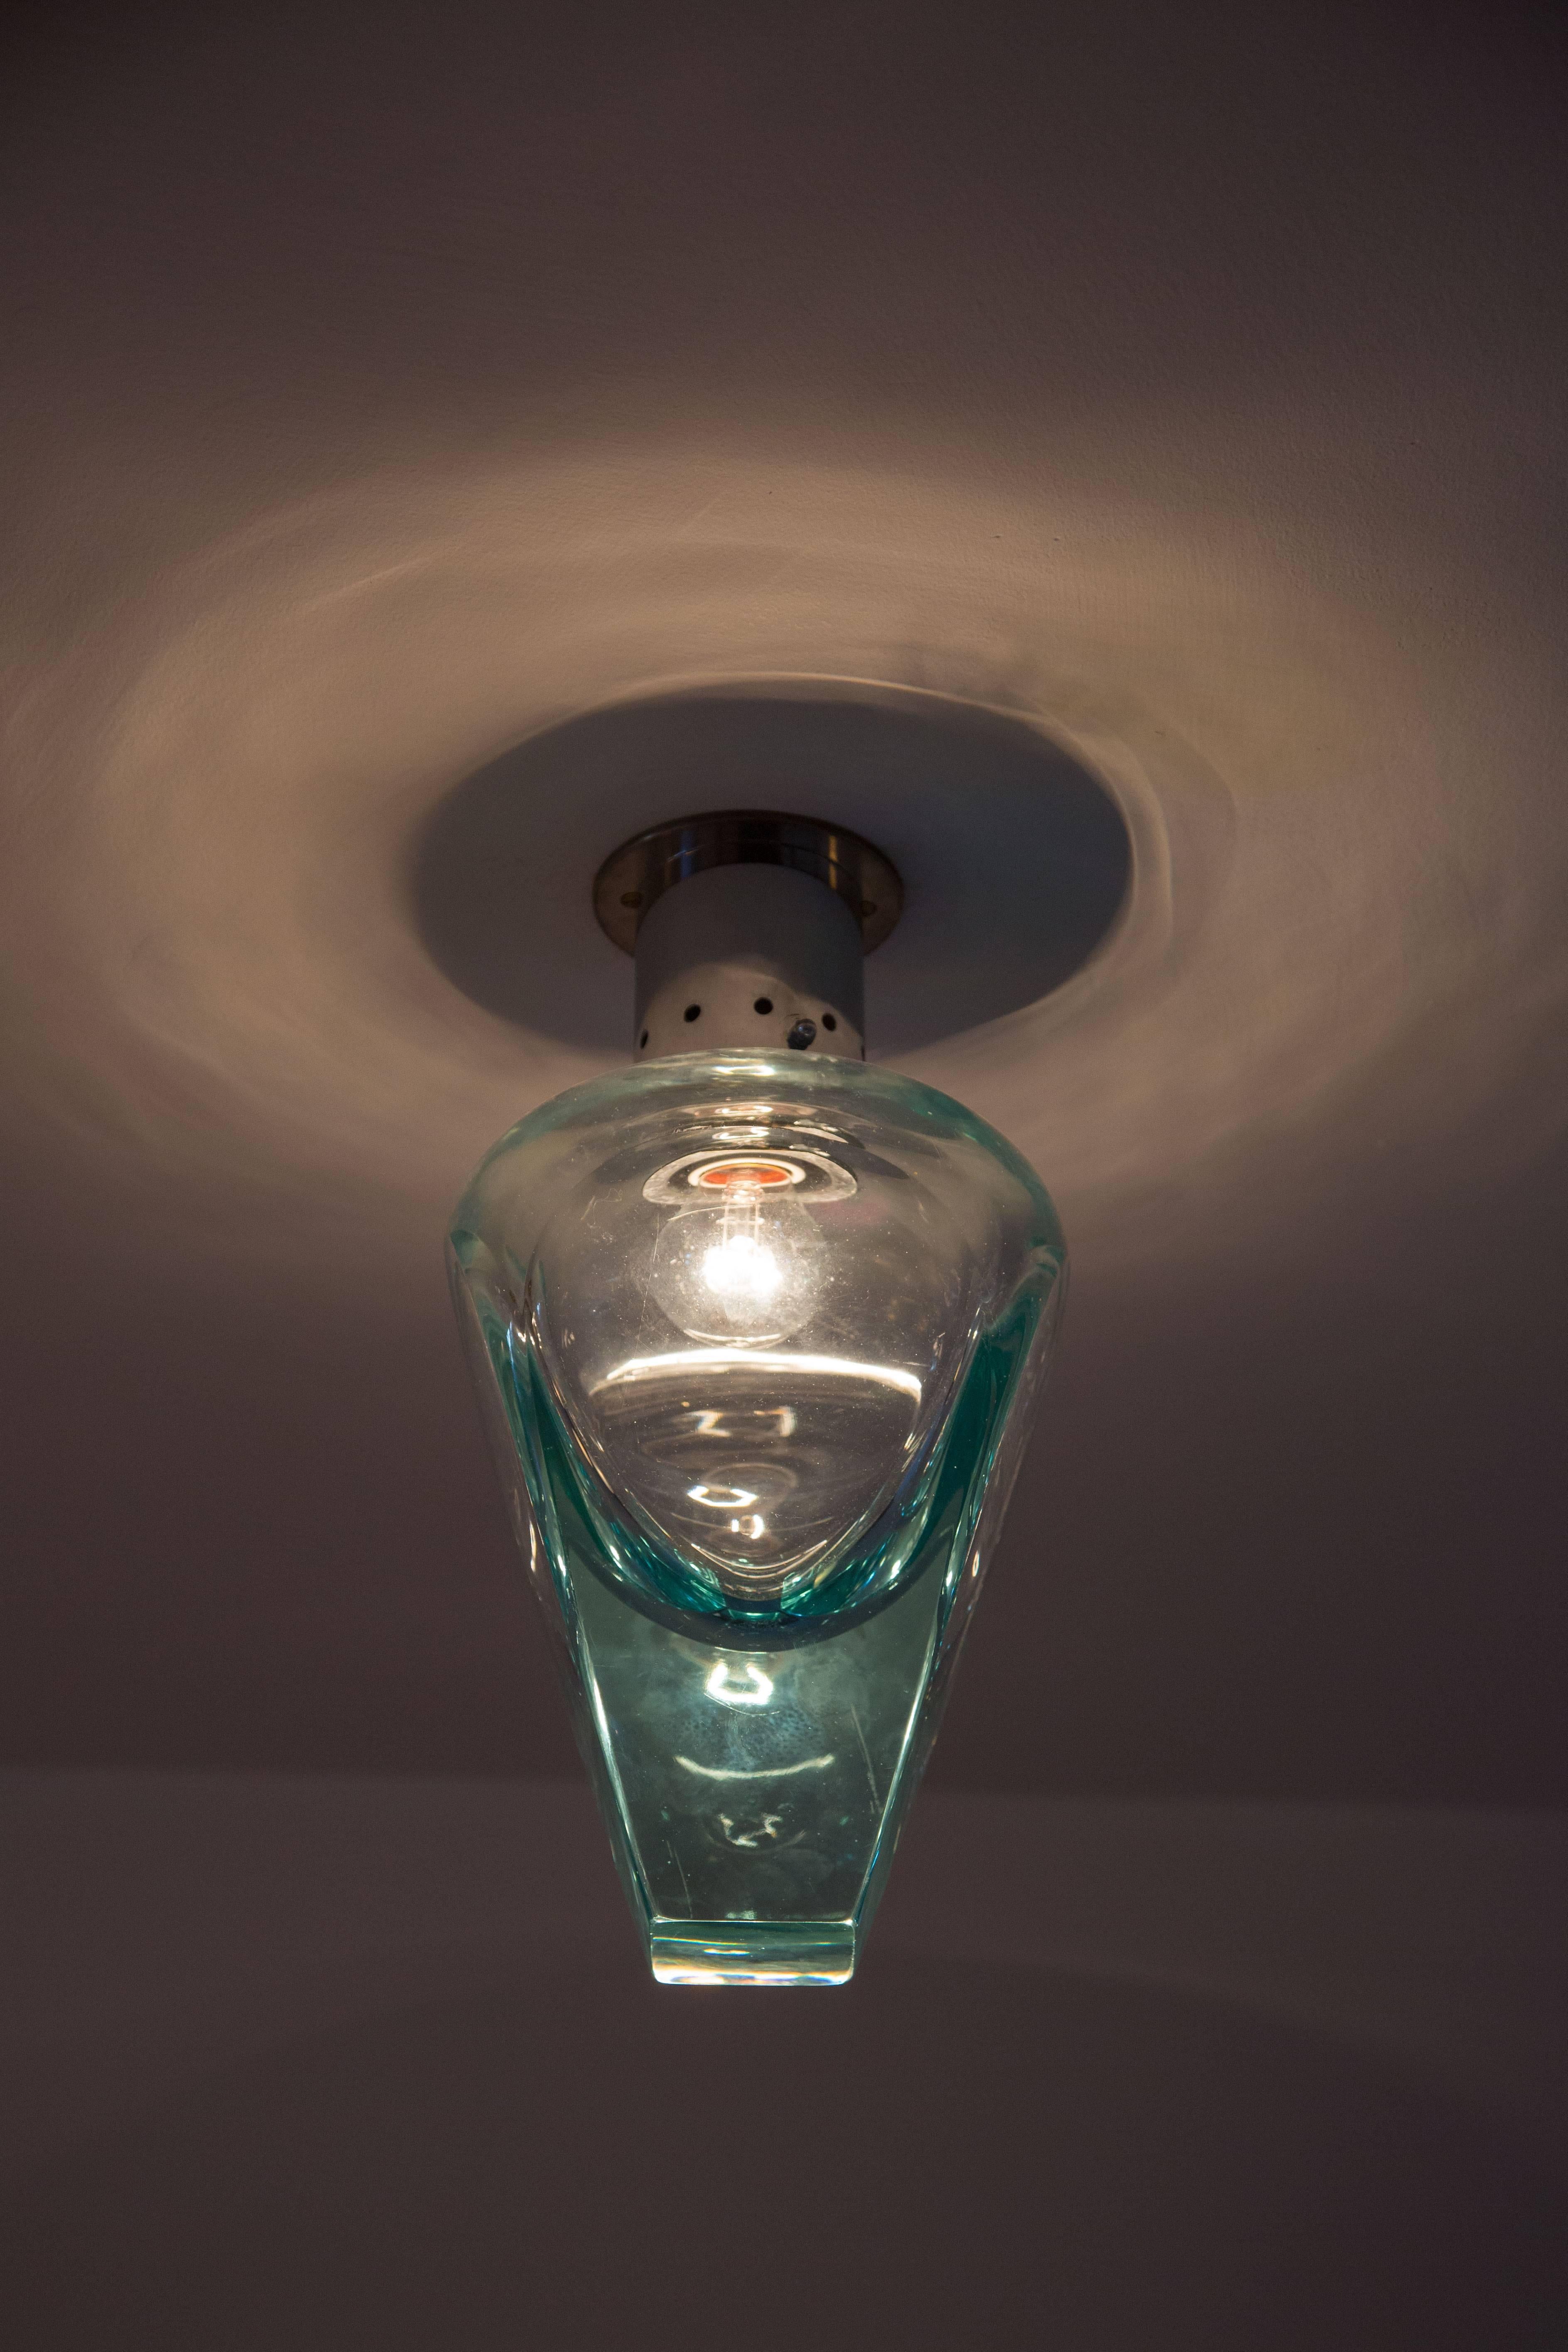 Large glass flush mount ceiling light
